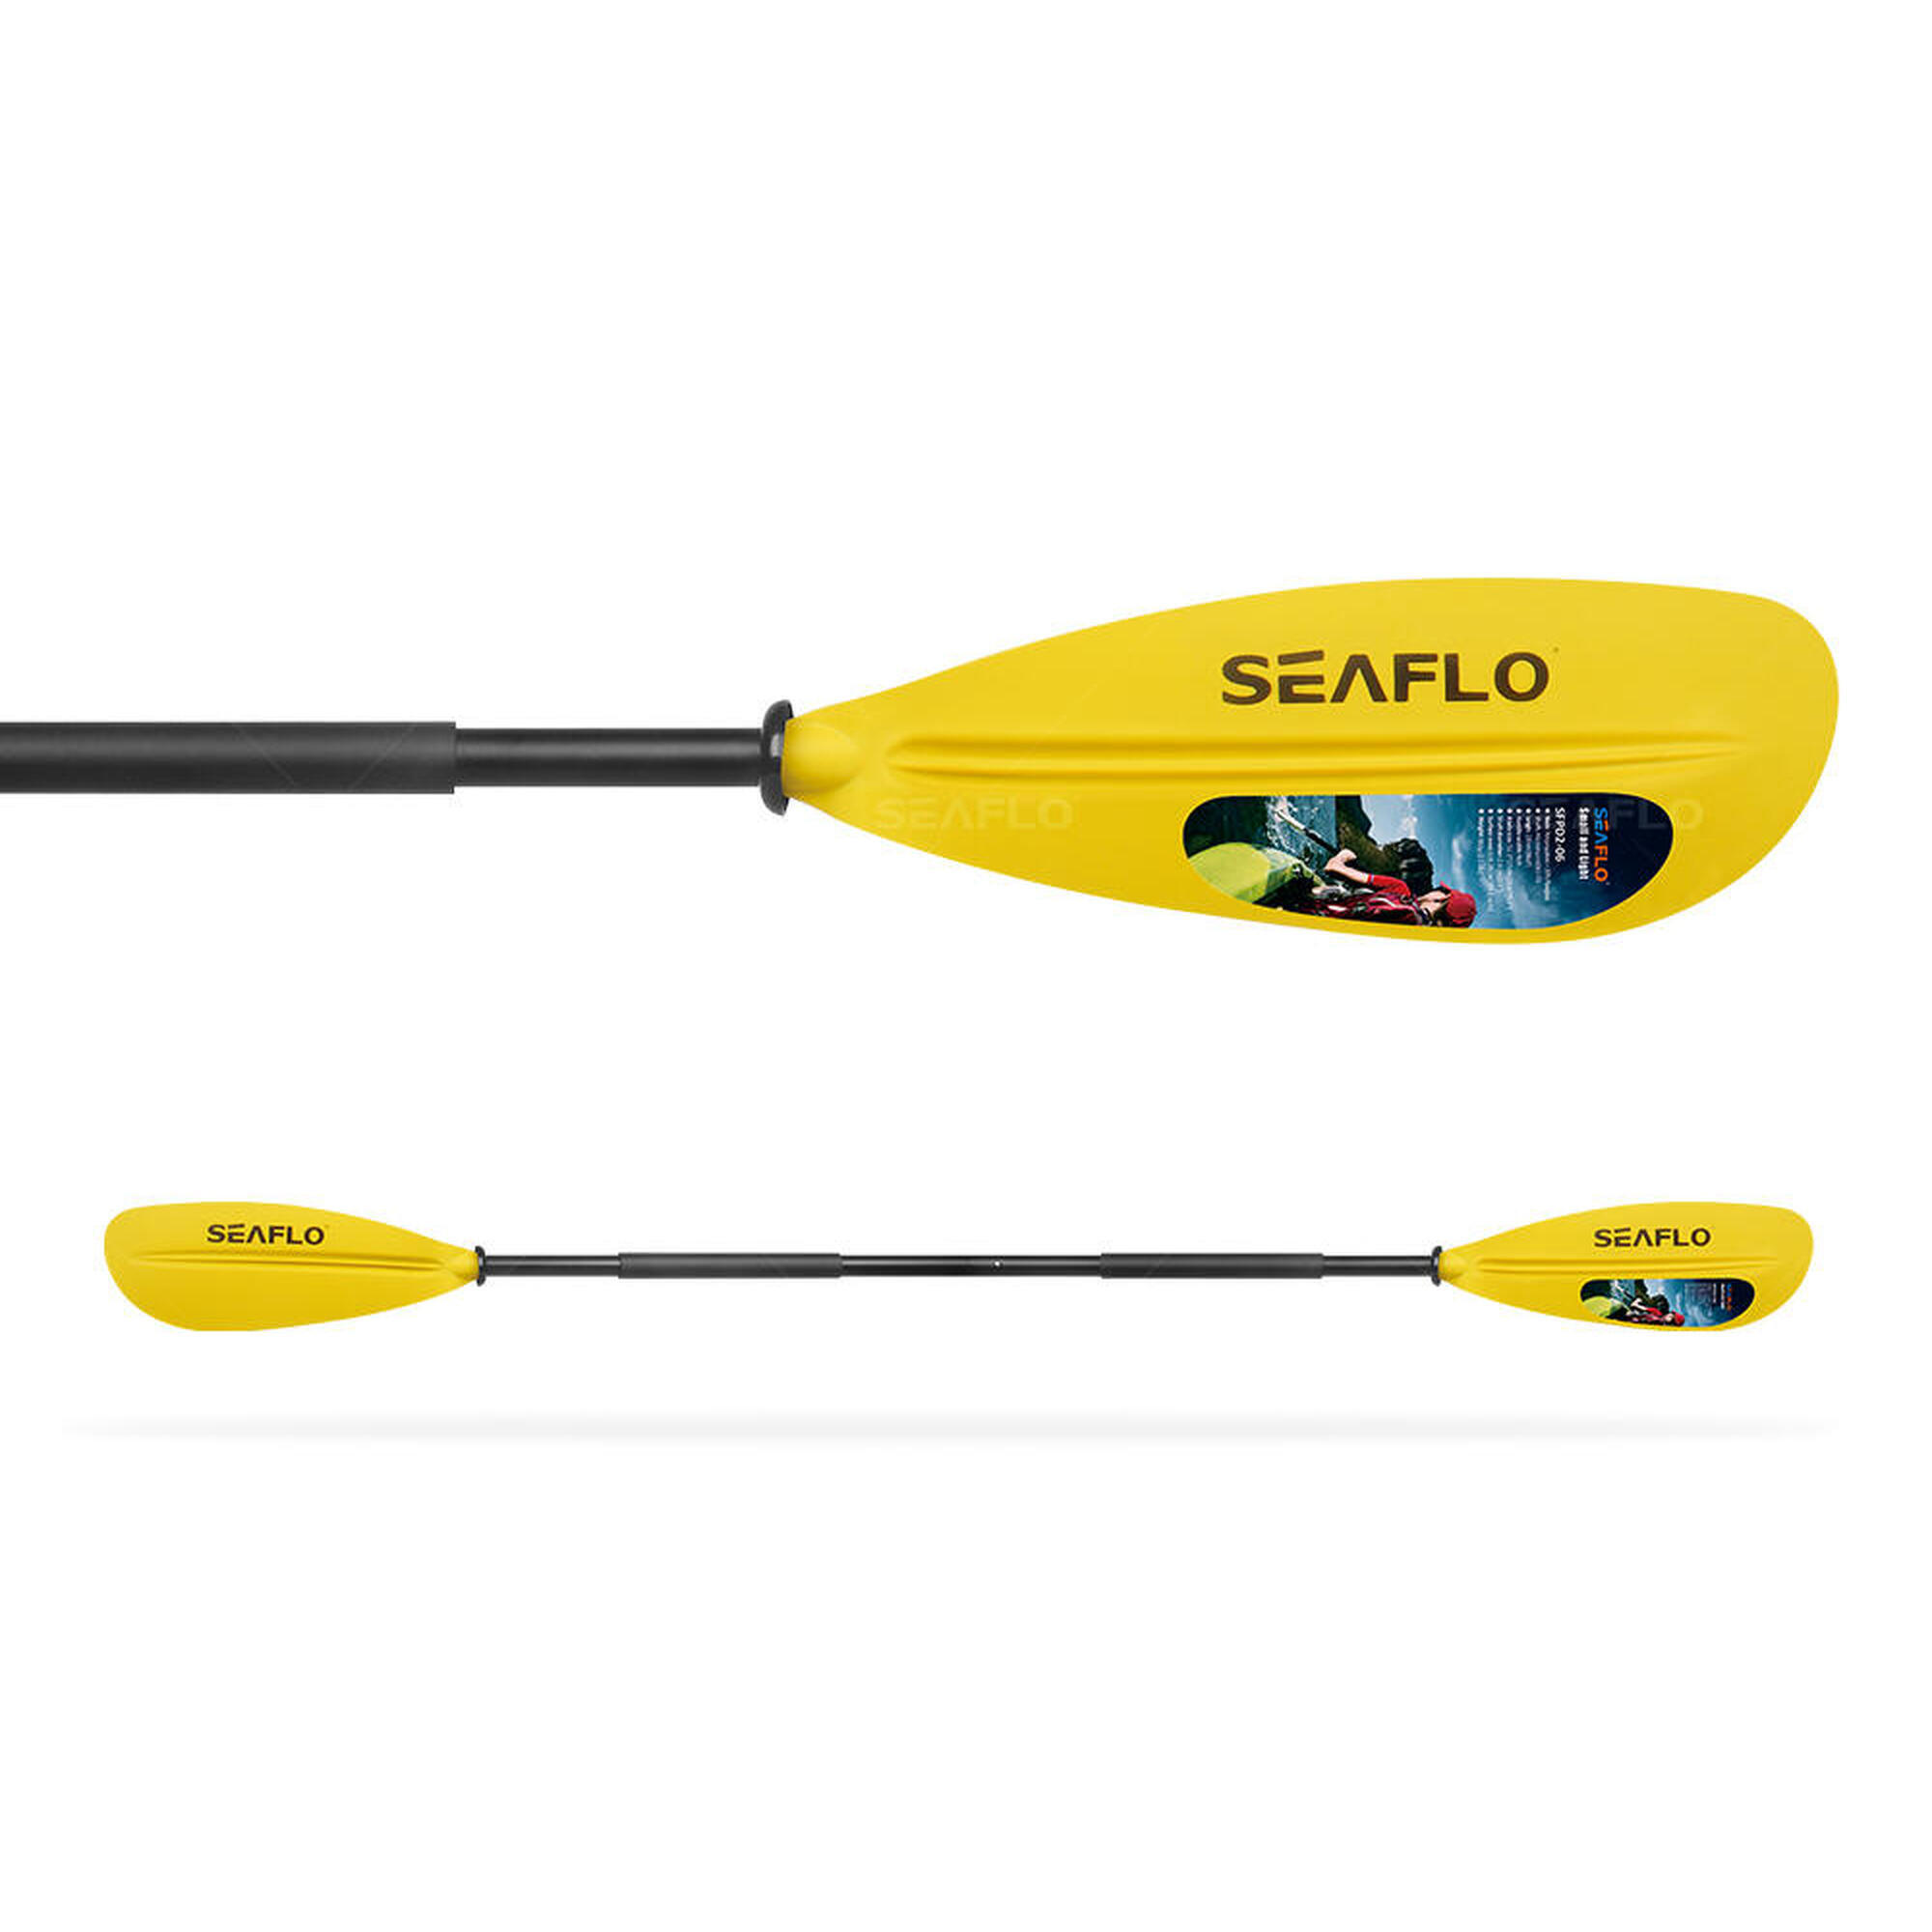 Весло для взрослых каяк sf206g черное двойное весло seaflo, желтый черный